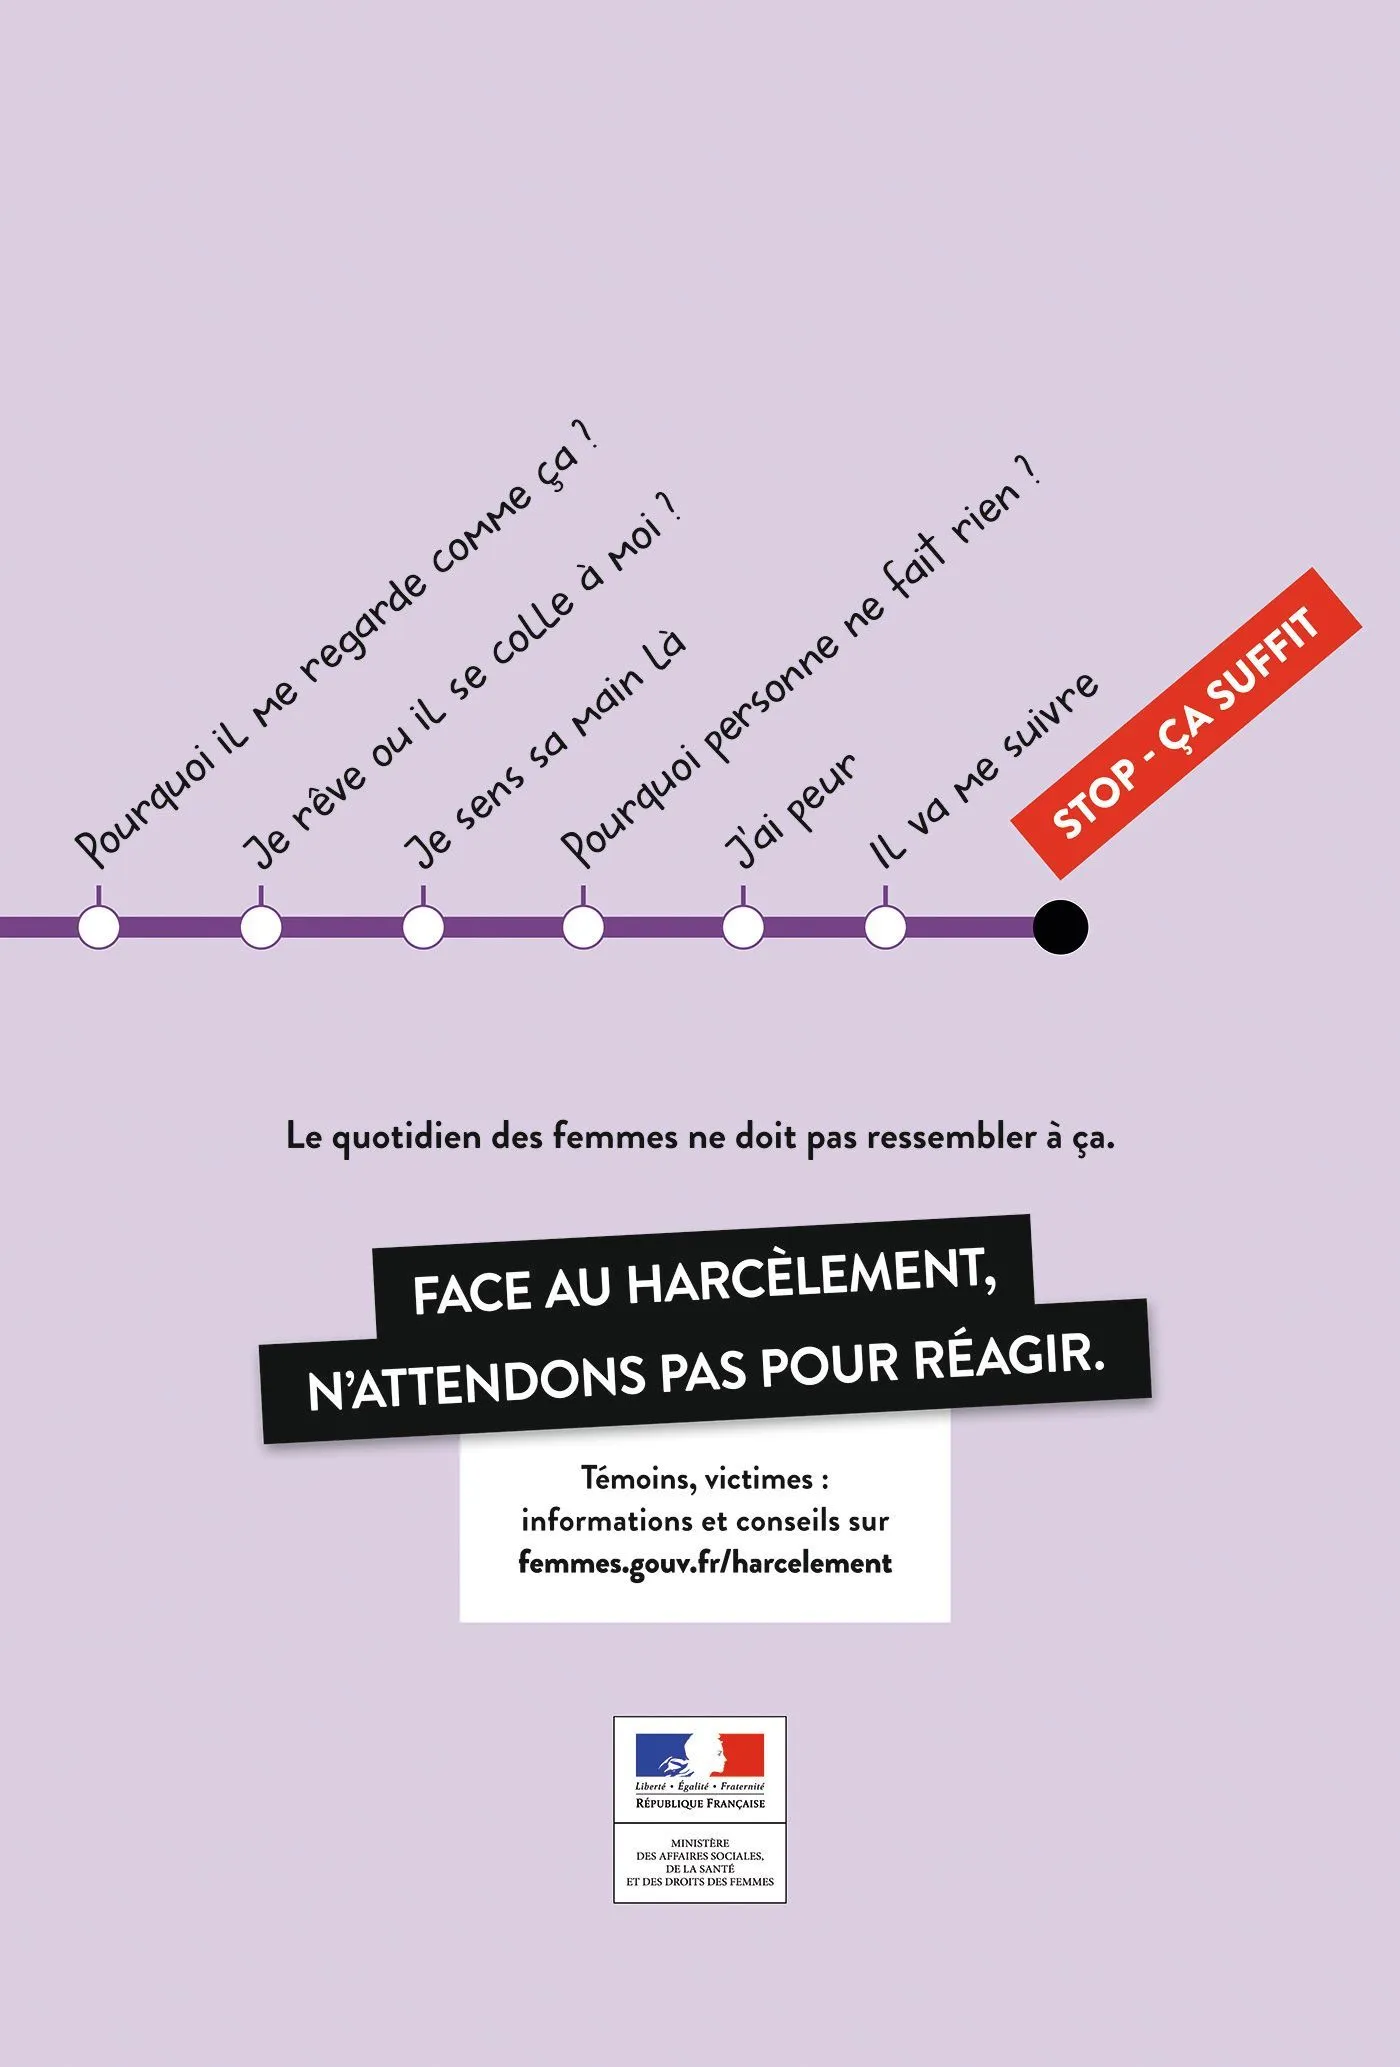 Campagne de sensibilisation « Face au harcèlement, n'attendons pas pour agir », secrétariat d'État chargé de l'Égalité entre les femmes et les hommes et de la lutte contre les discriminations, 2015.